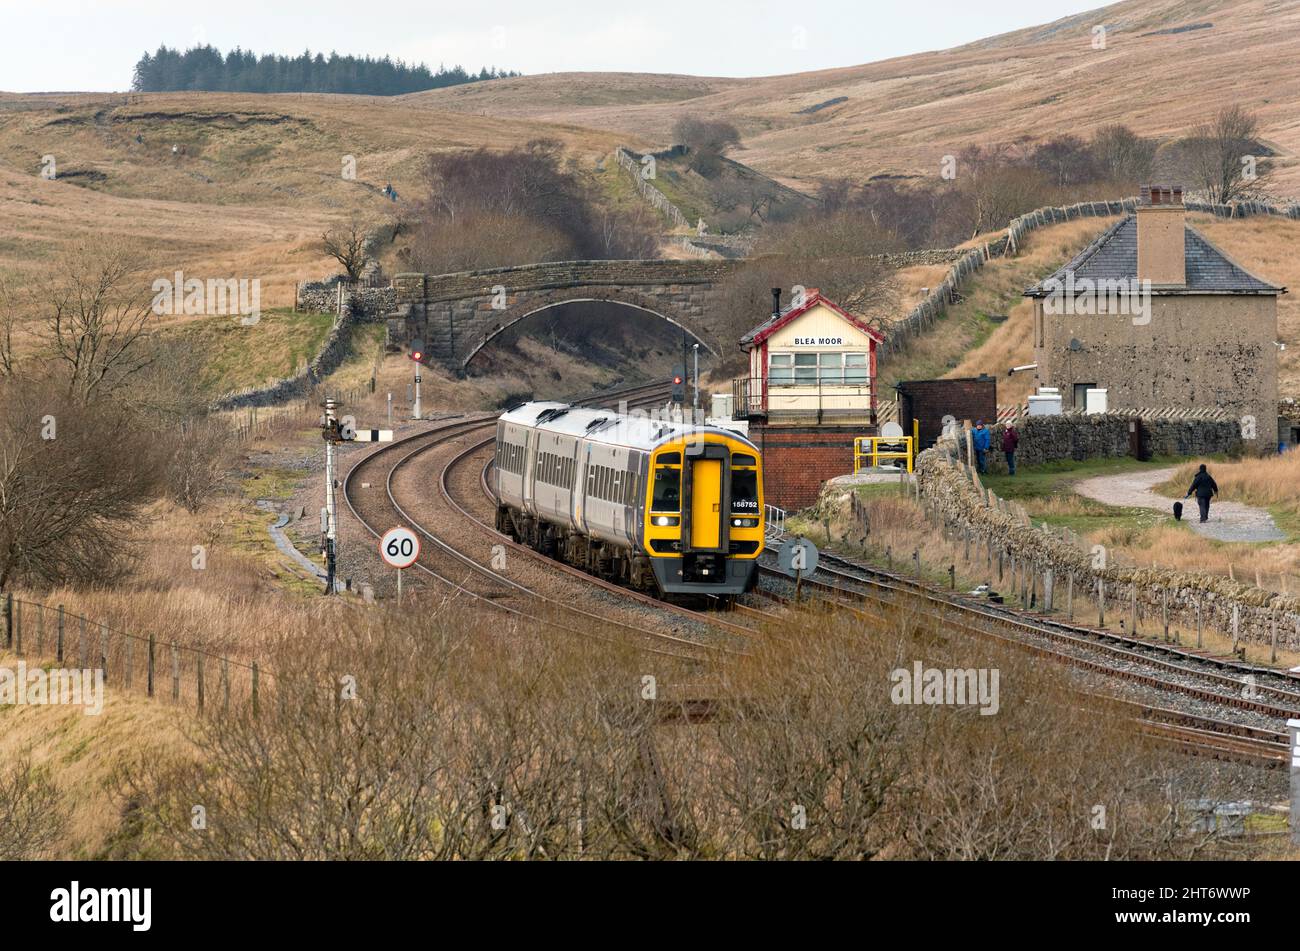 Un train de voyageurs Sprinter passe la boîte de signalisation Blea Moor en route vers Leeds depuis Carlisle, sur le célèbre chemin de fer Settle-Carlisle. Banque D'Images